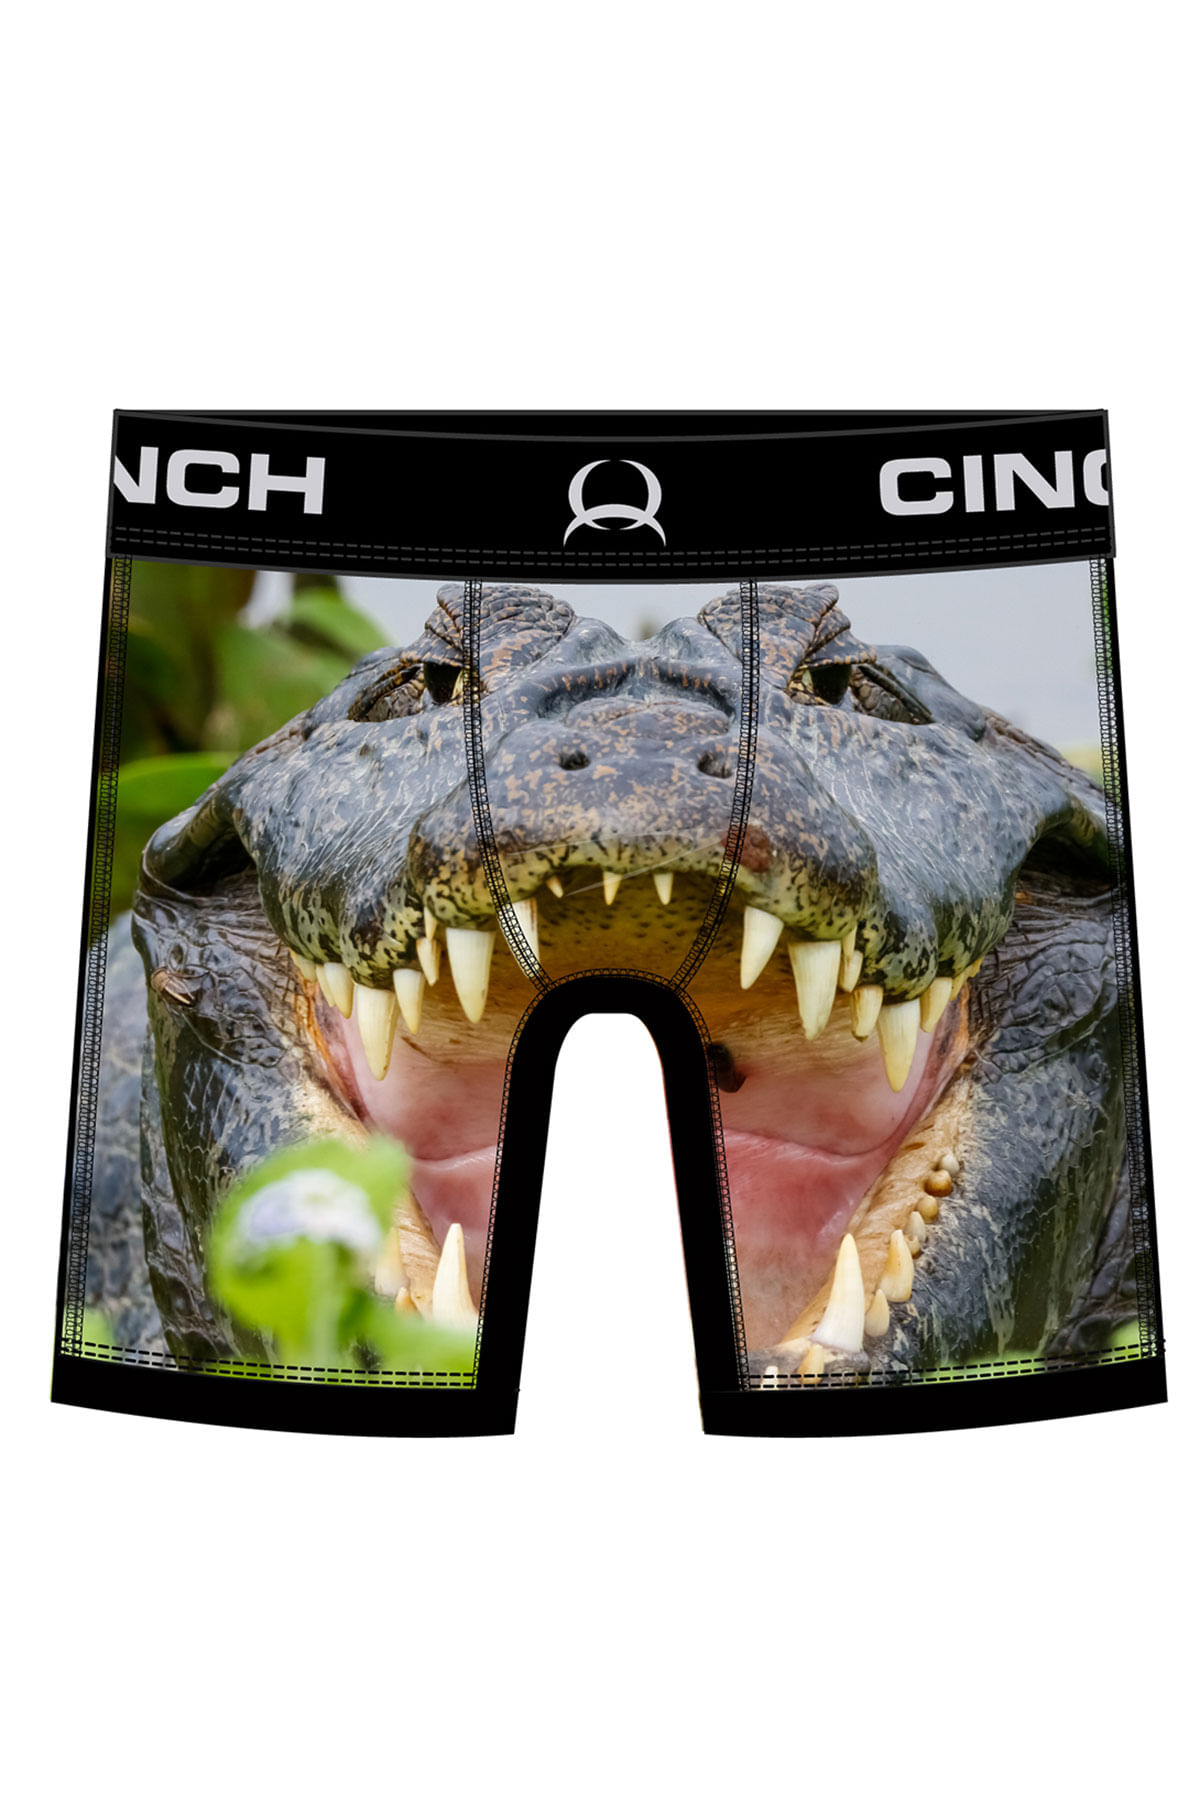 ZZKKO Crocodile and Grass Mens Boxer Briefs Underwear Breathable